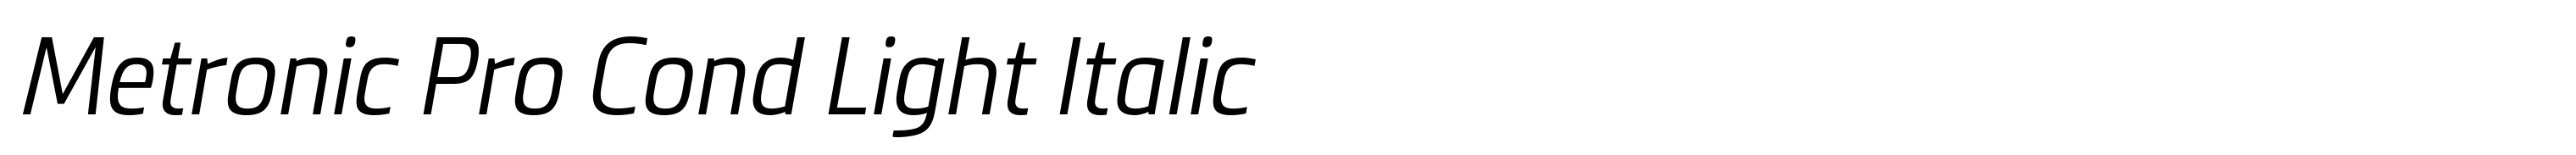 Metronic Pro Cond Light Italic